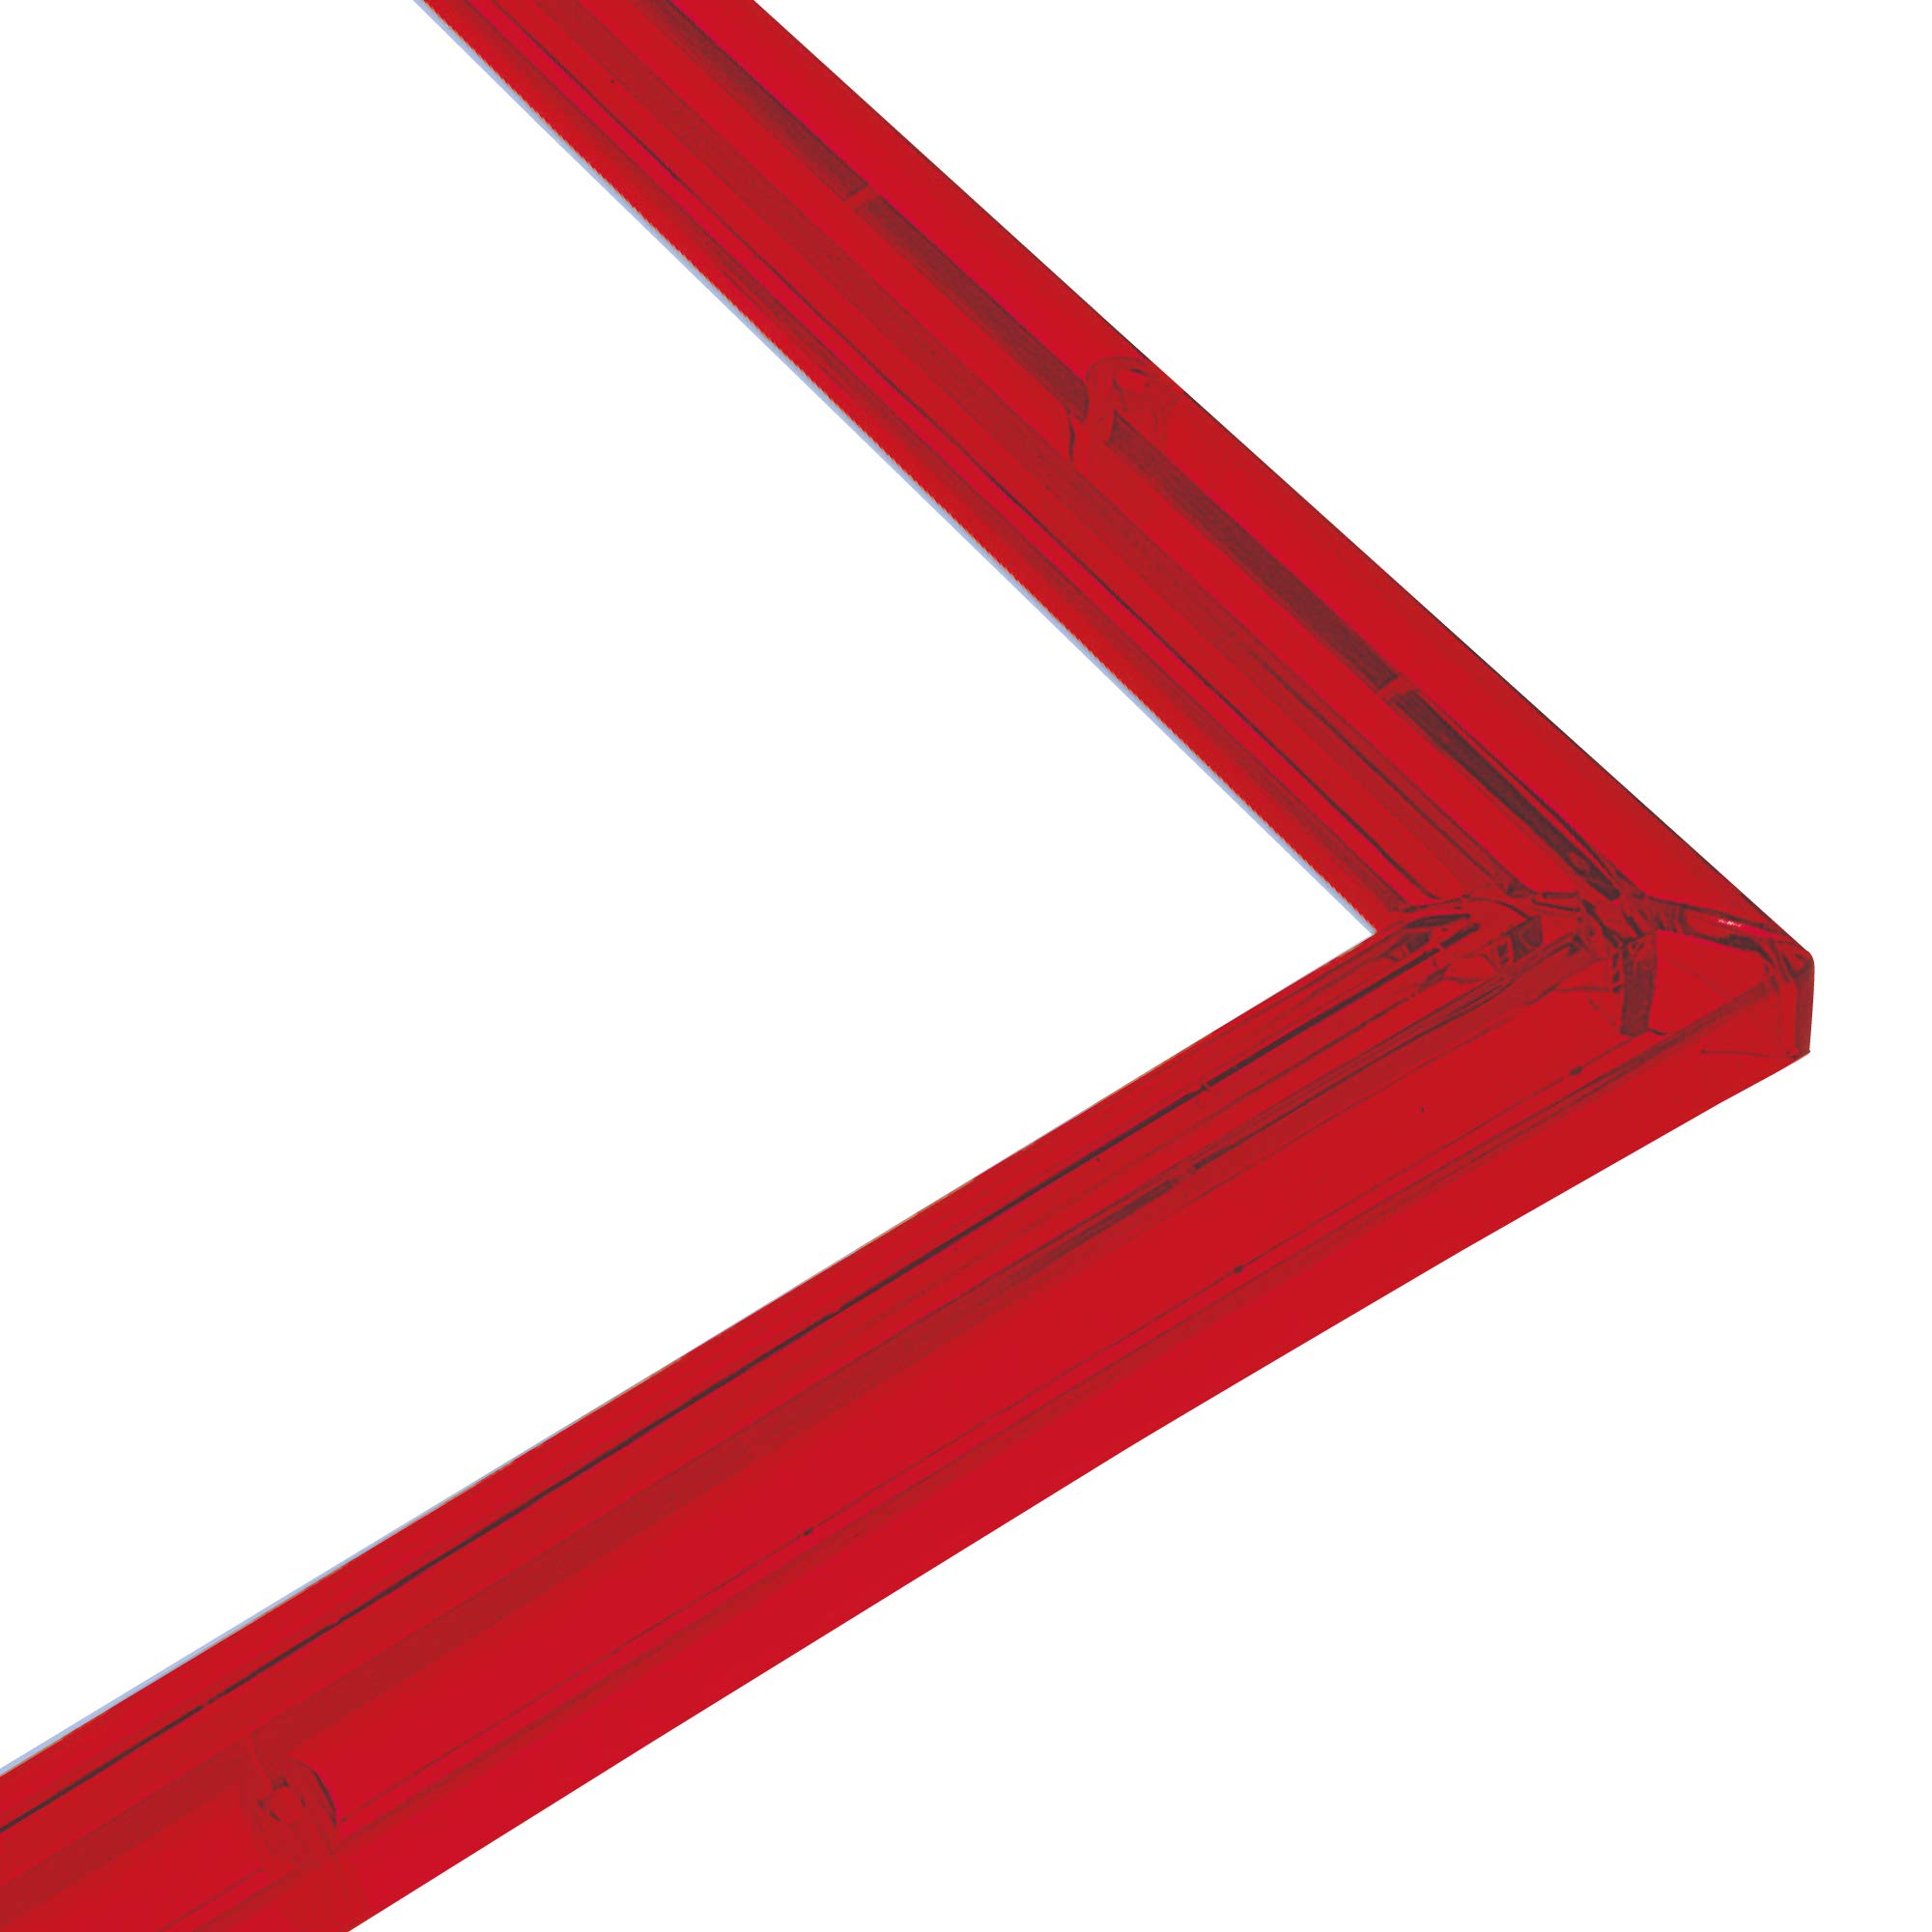 エポック社 パズルフレーム クリスタルパネル レッド (26×38cm) (パネルNo.3) 専用スタンド付 パズル Frame 額縁